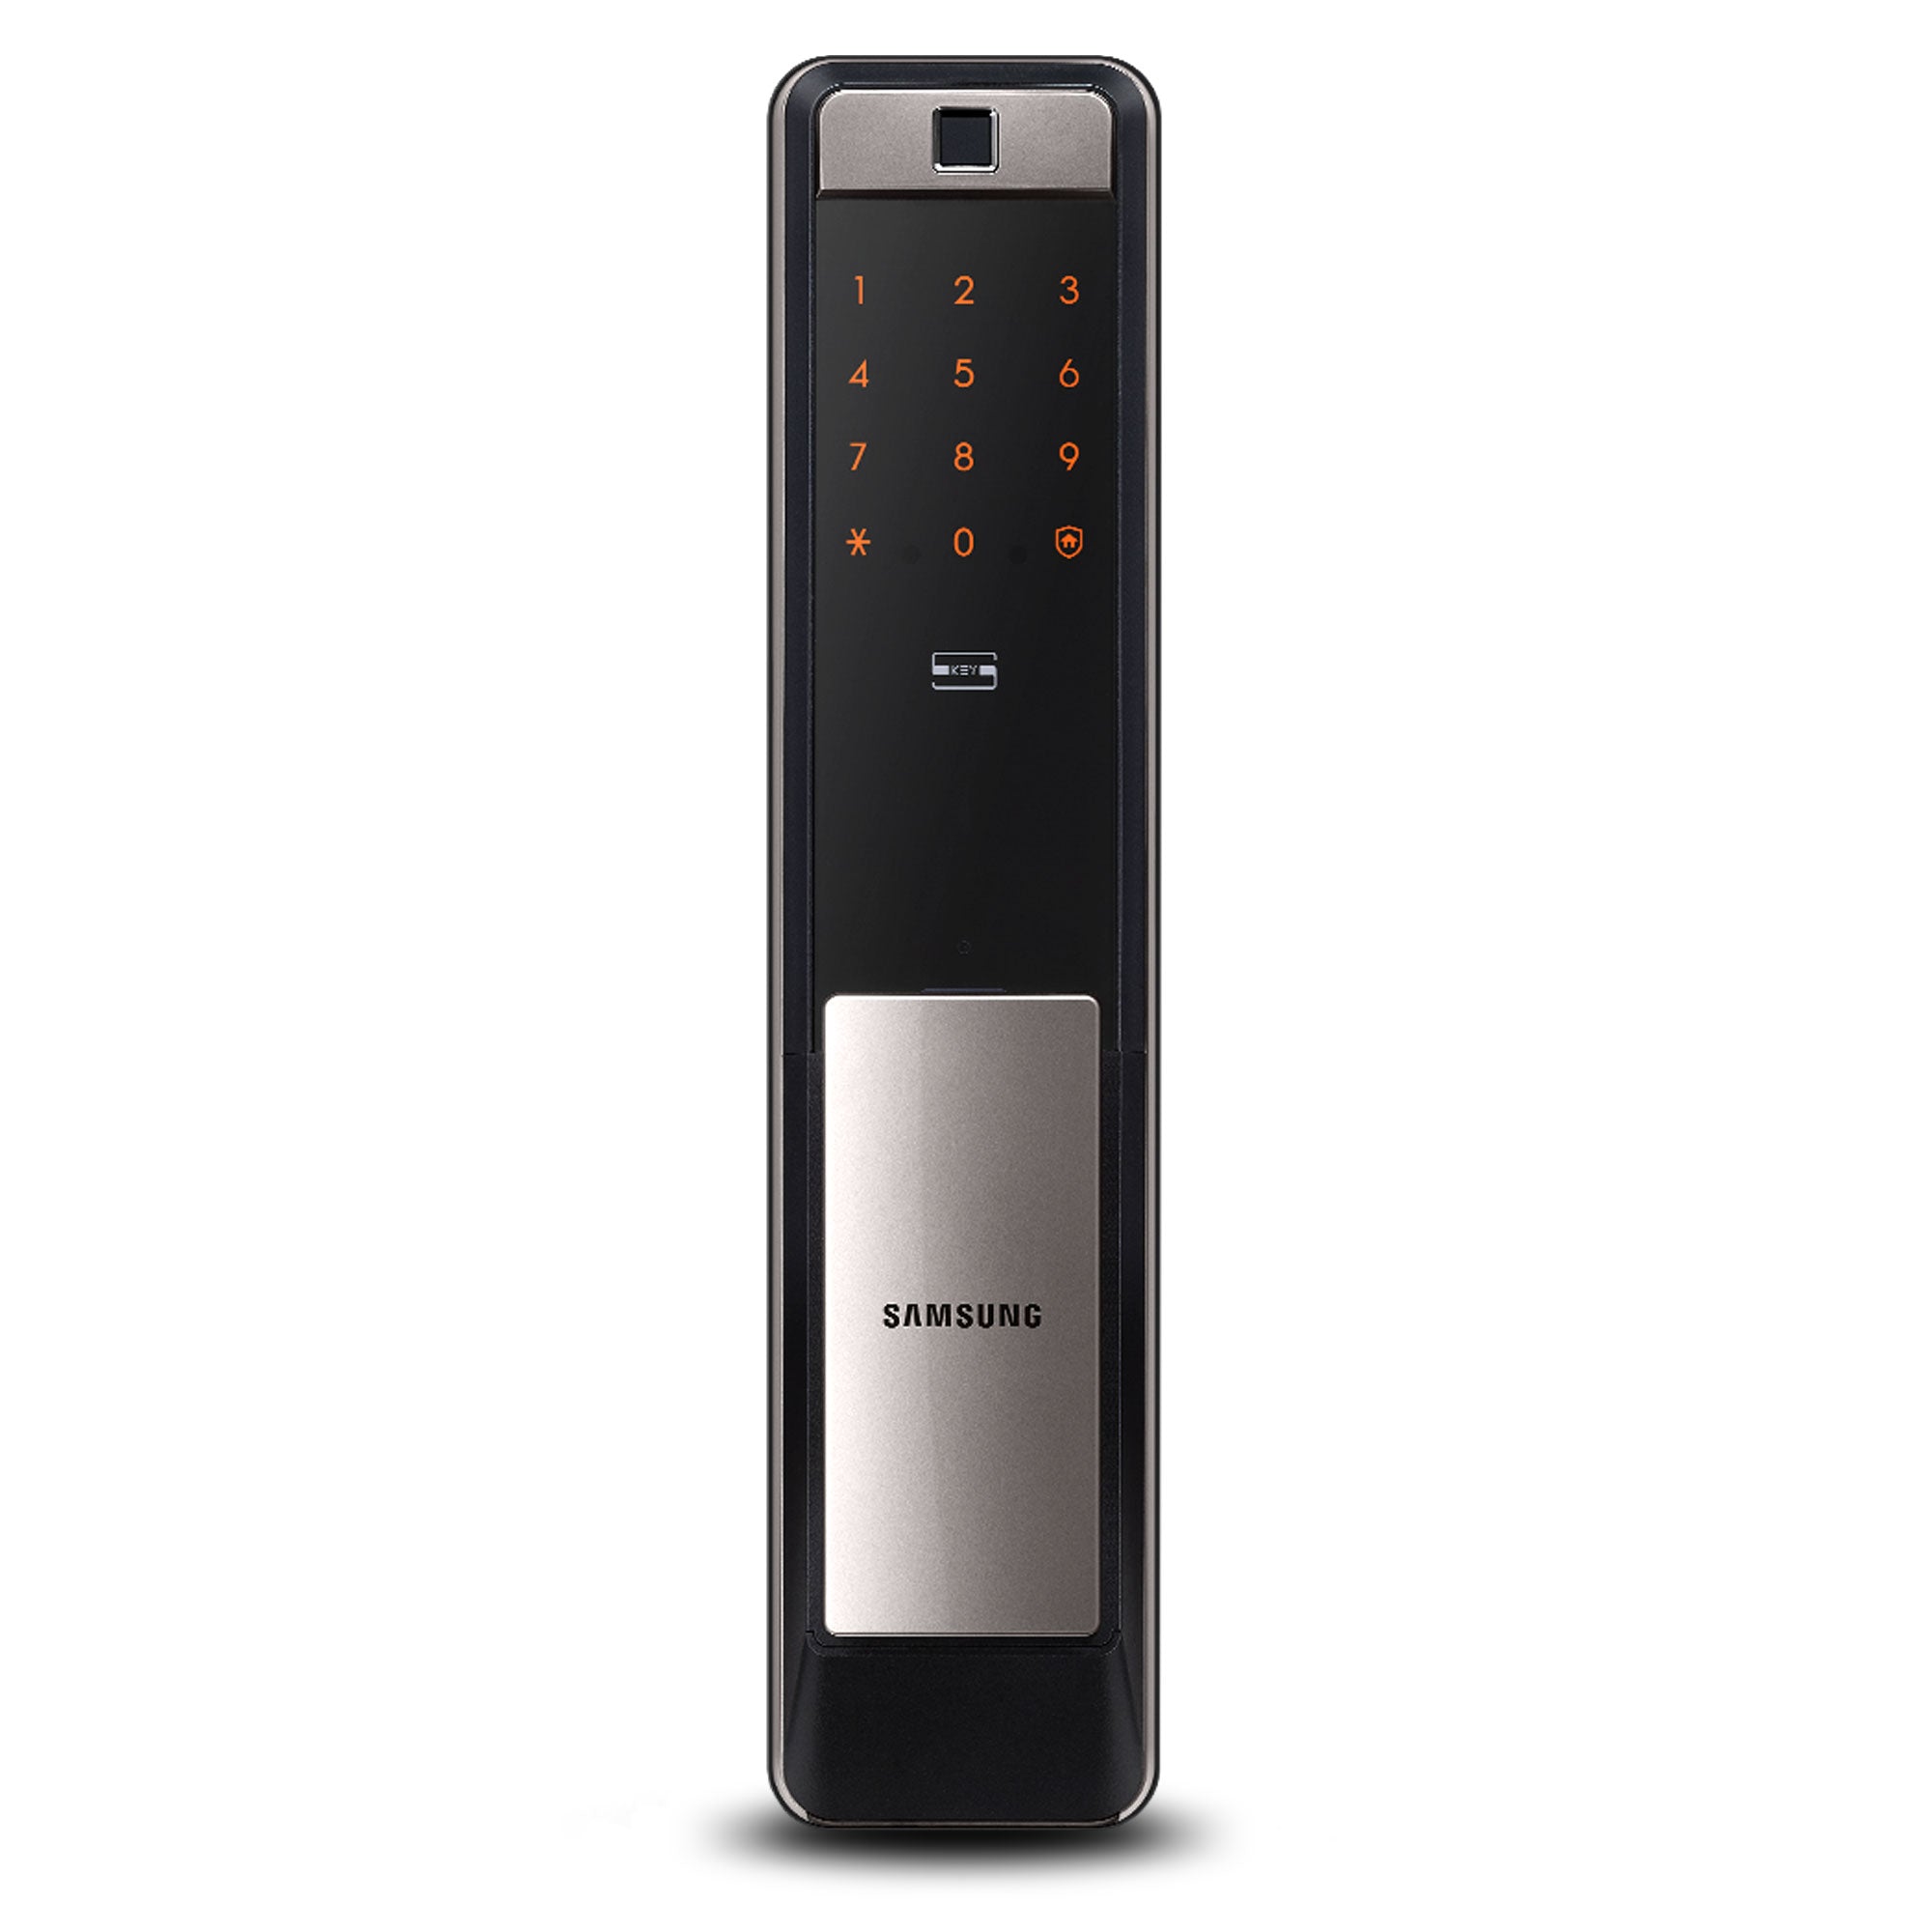 Cerradura Samsung modelo SHP-DP609 con panel touch y timbre